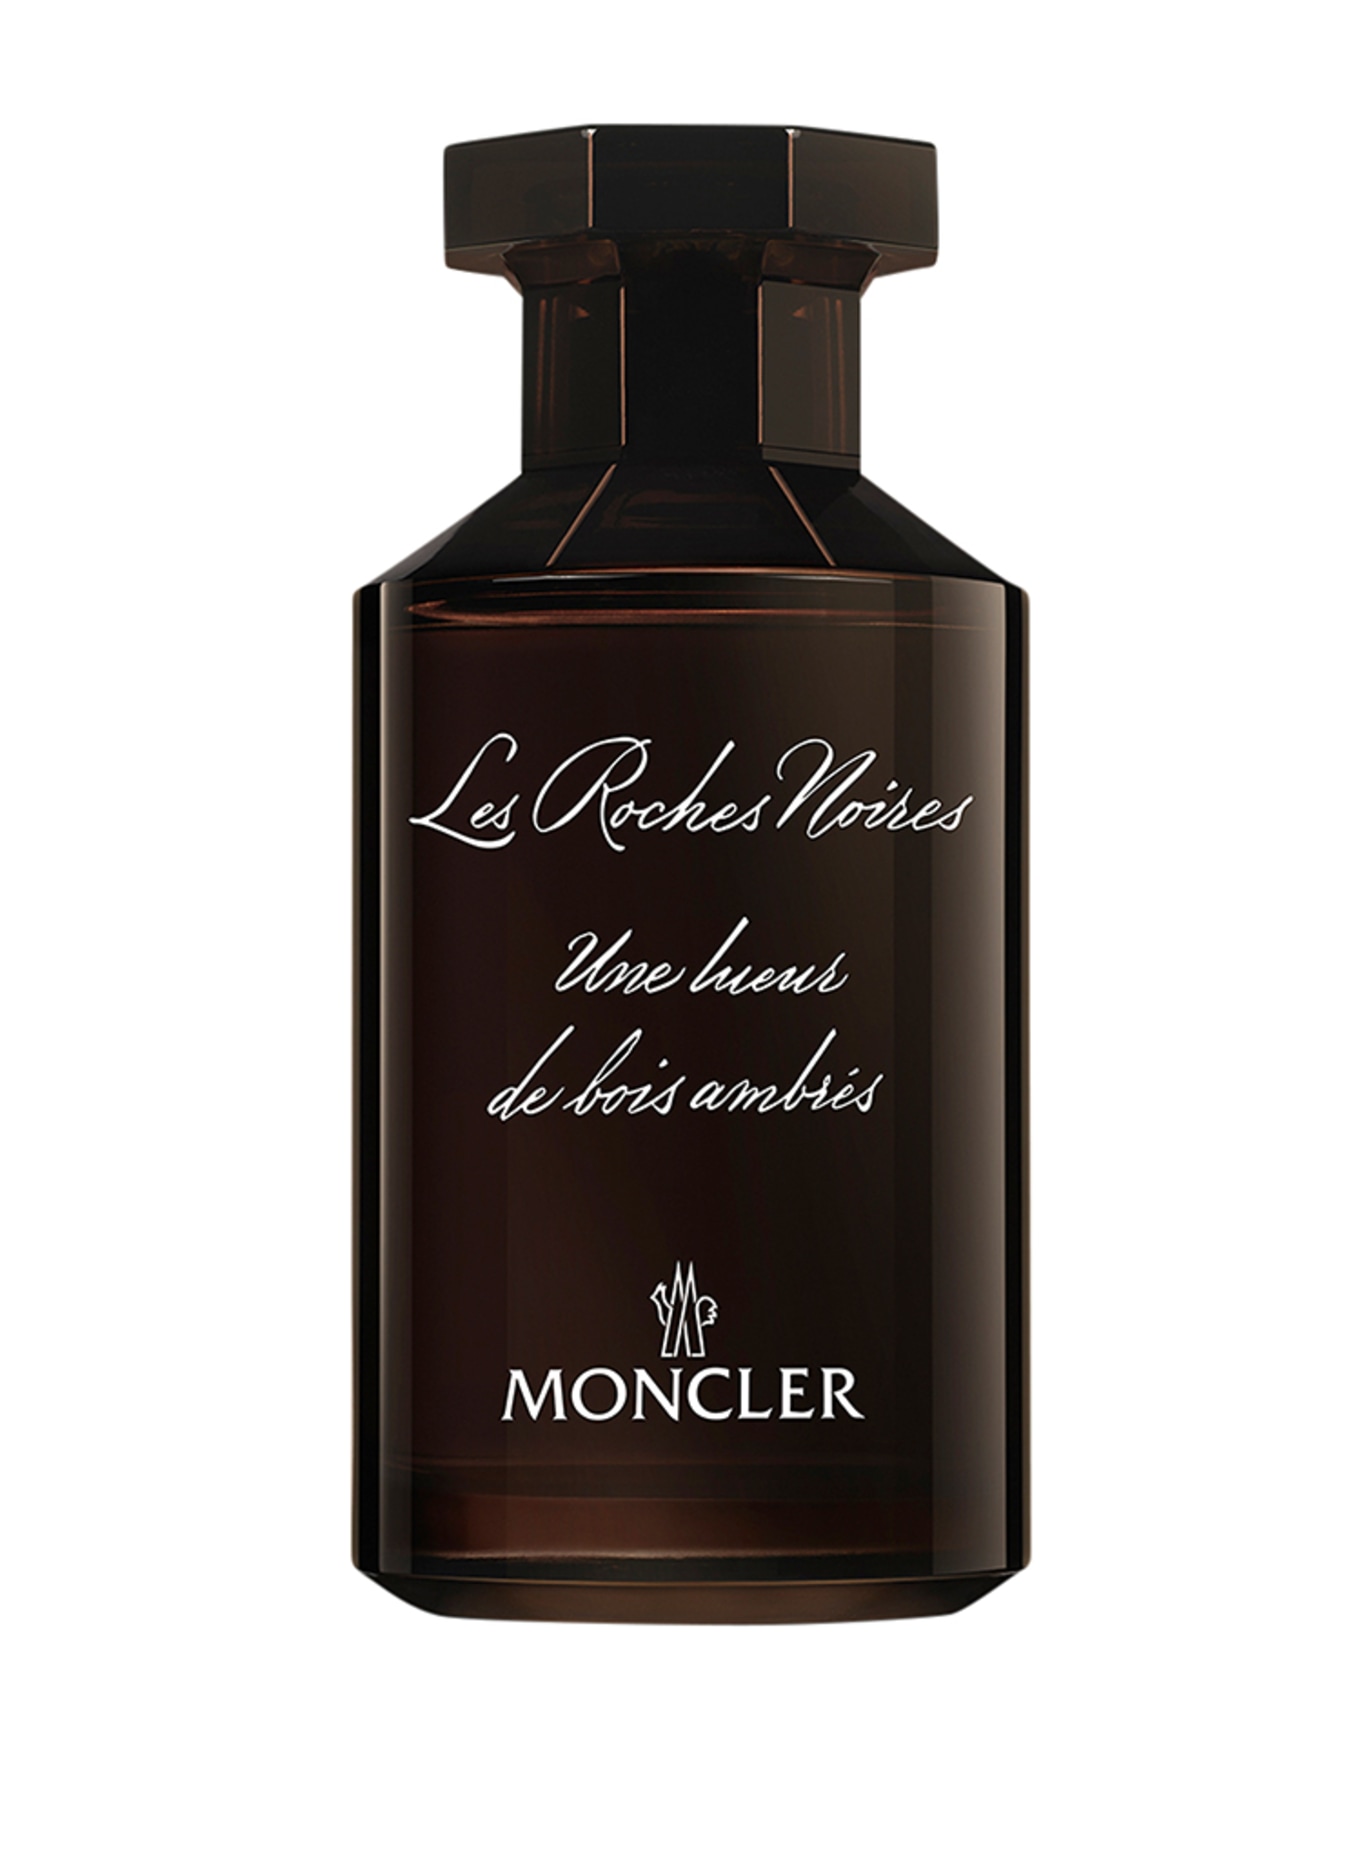 MONCLER Fragrances LES ROCHES NOIRES (Obrázek 1)